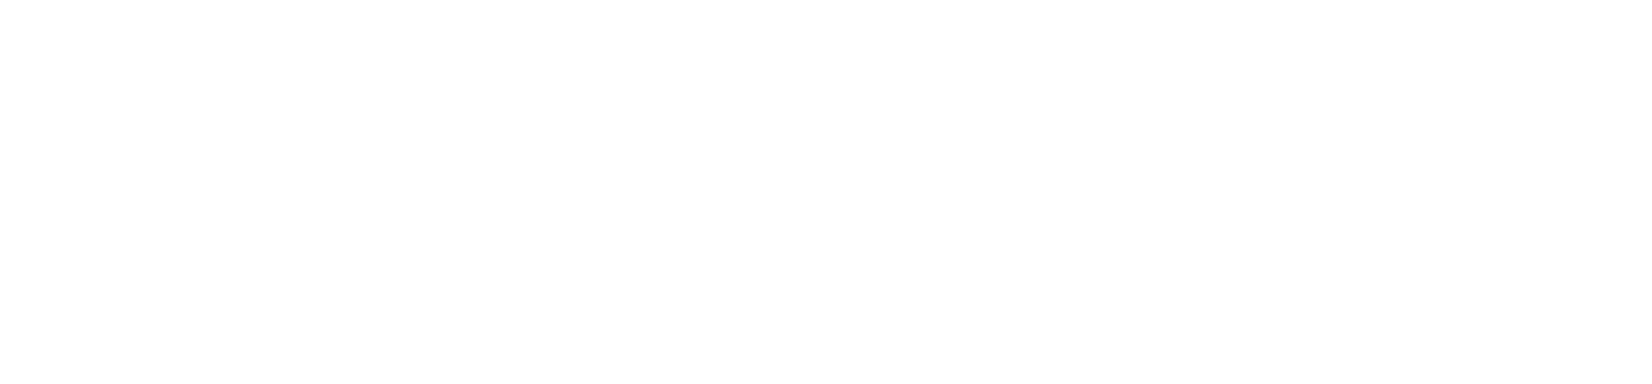 Sidra Medicine 